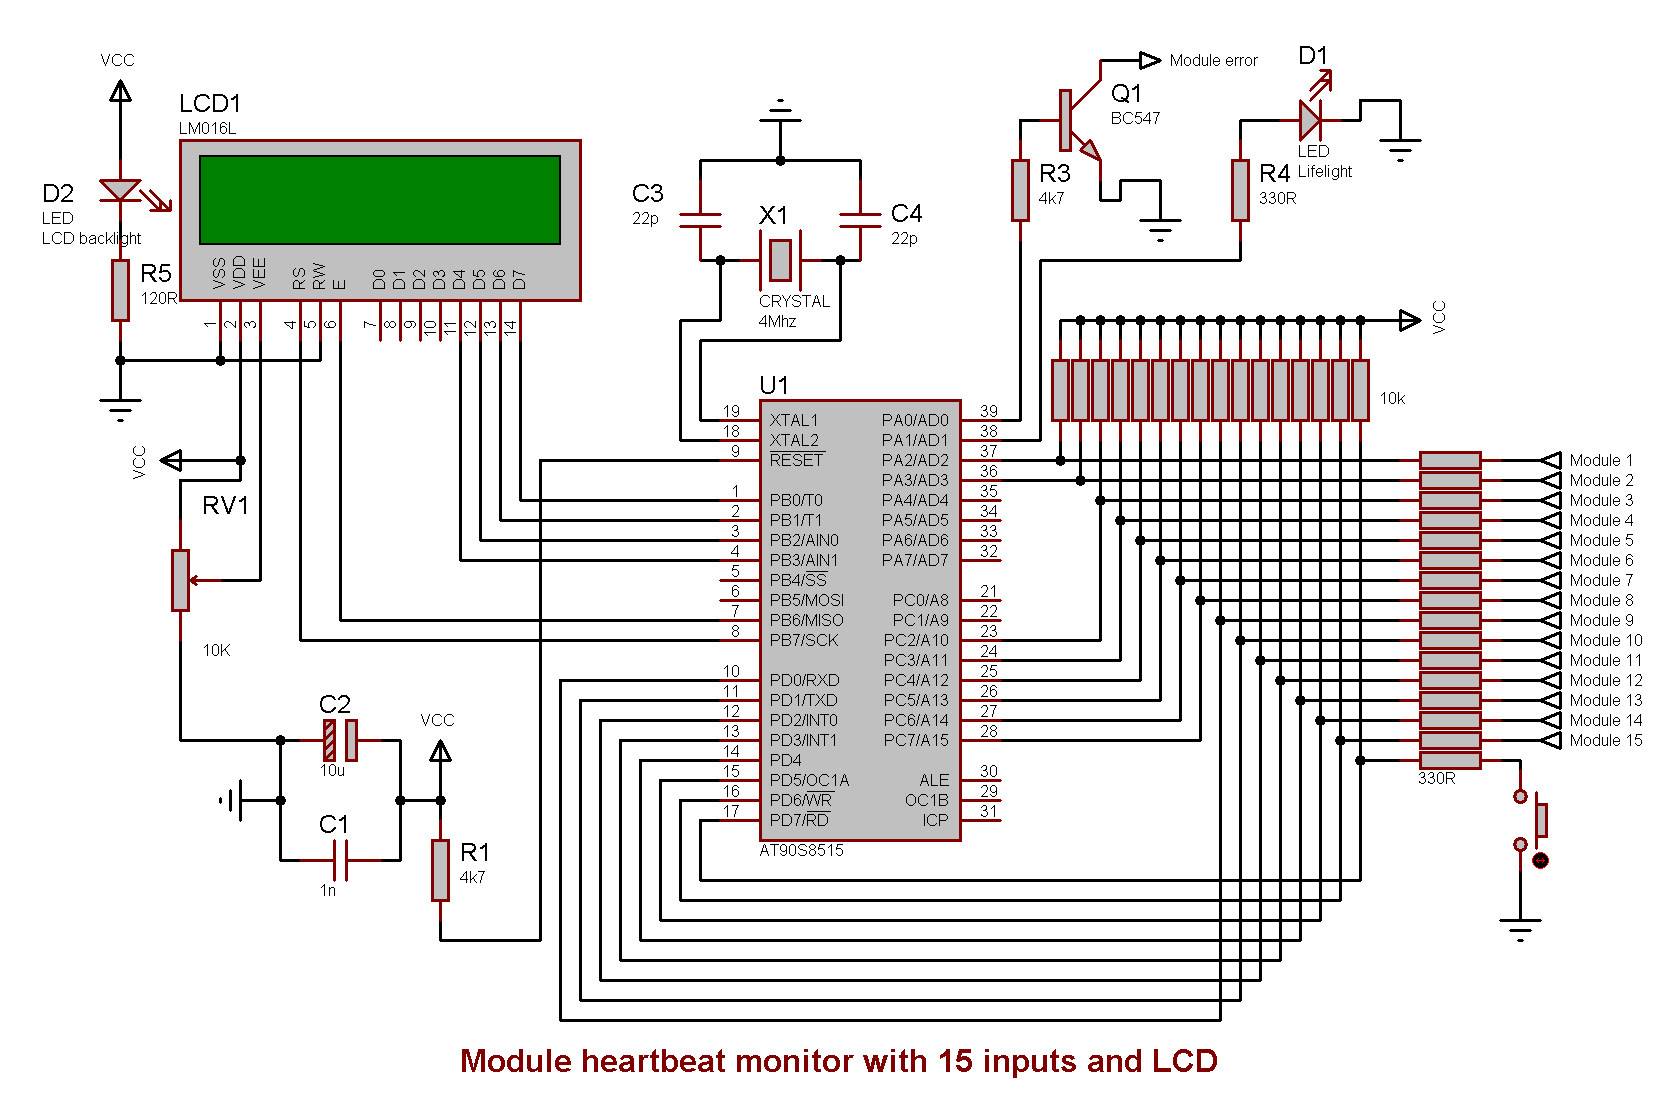 Schematics for the module heartbeat monitor module